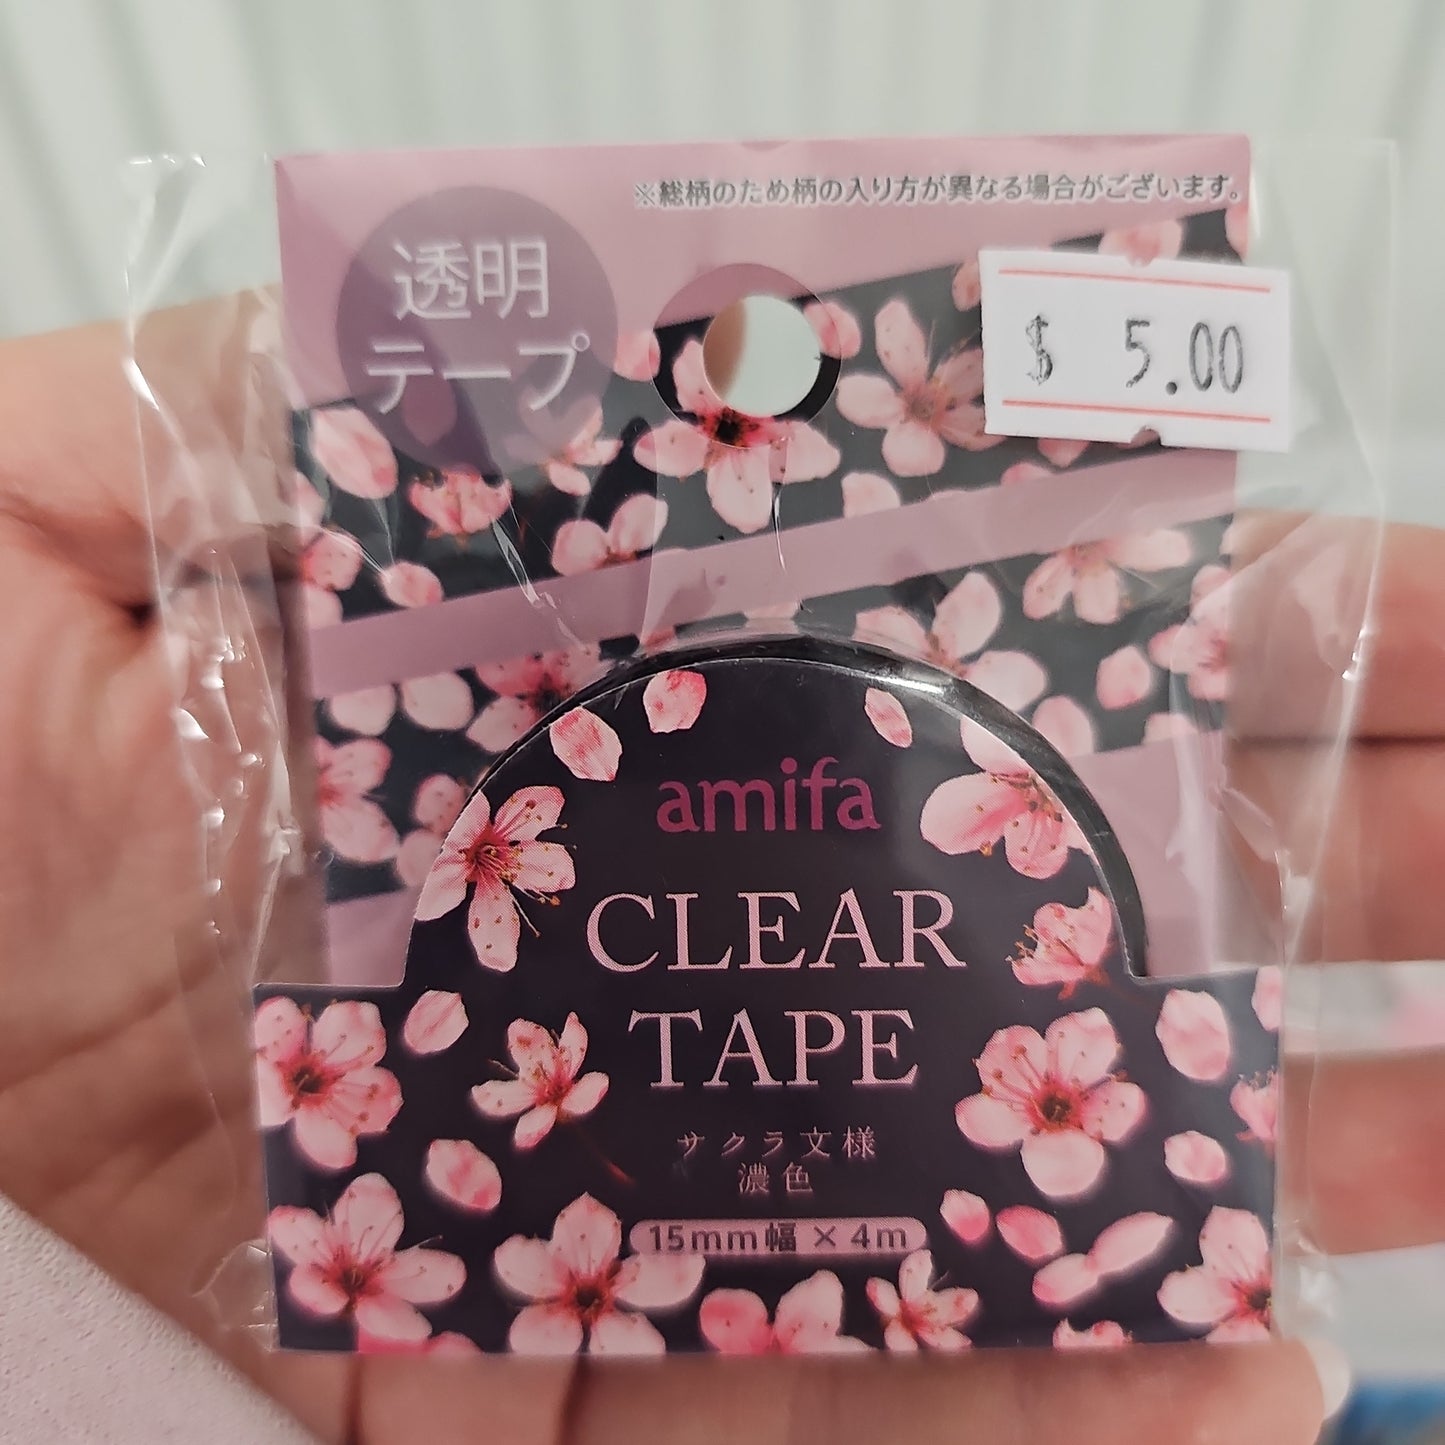 Amifa Clear Tape Sakura